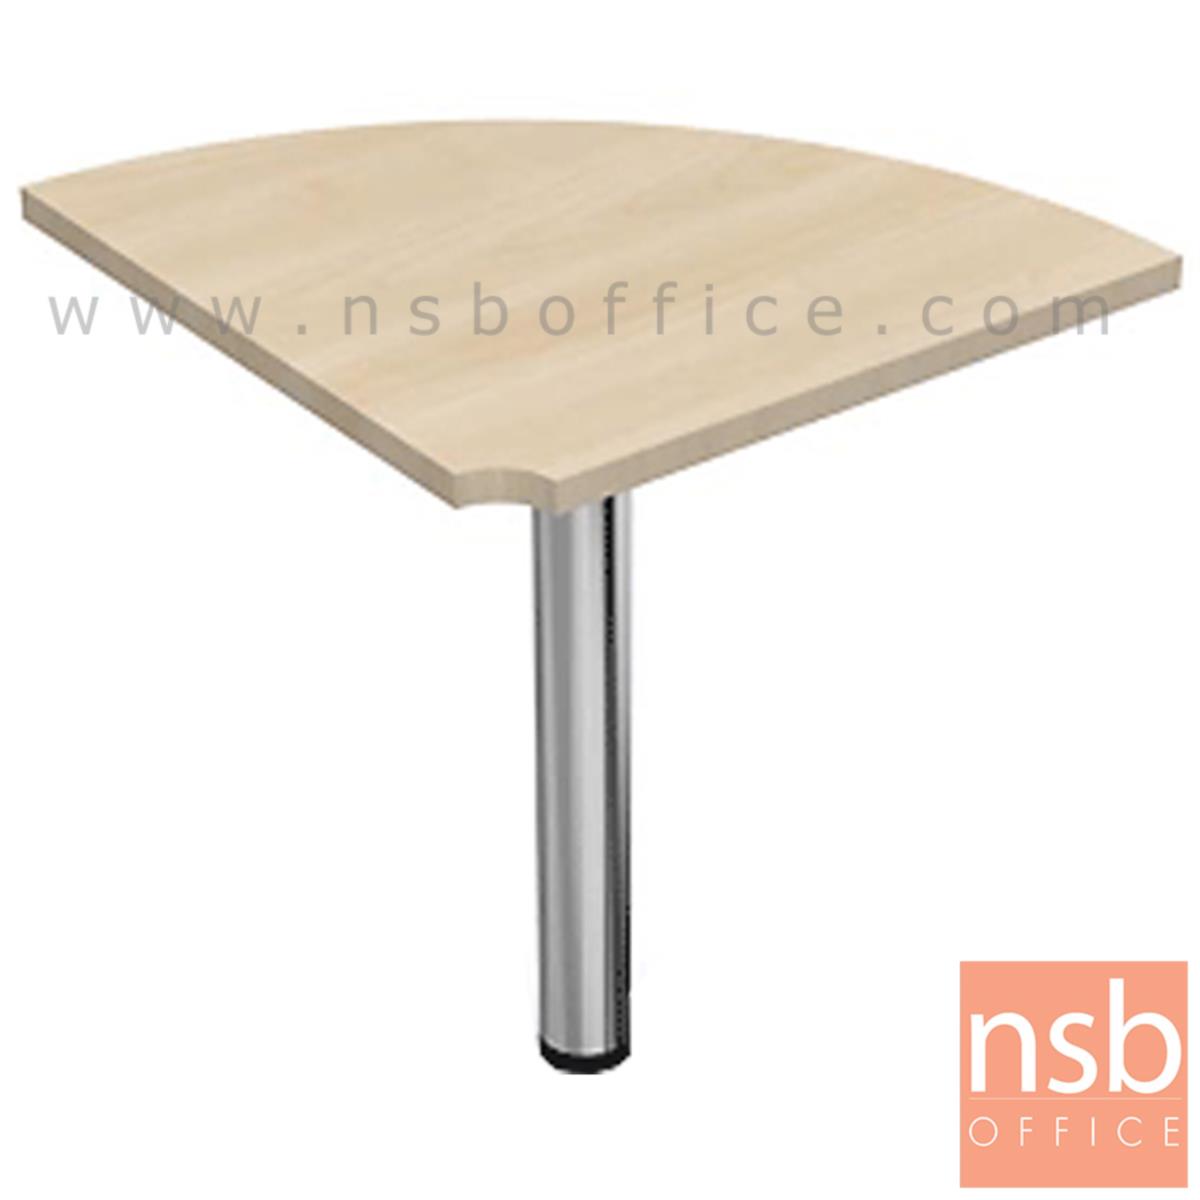 A05A060:โต๊ะเข้ามุมทรงโค้ง  ขนาด R60 cm.   เมลามีน ขากลมโครเมี่ยม